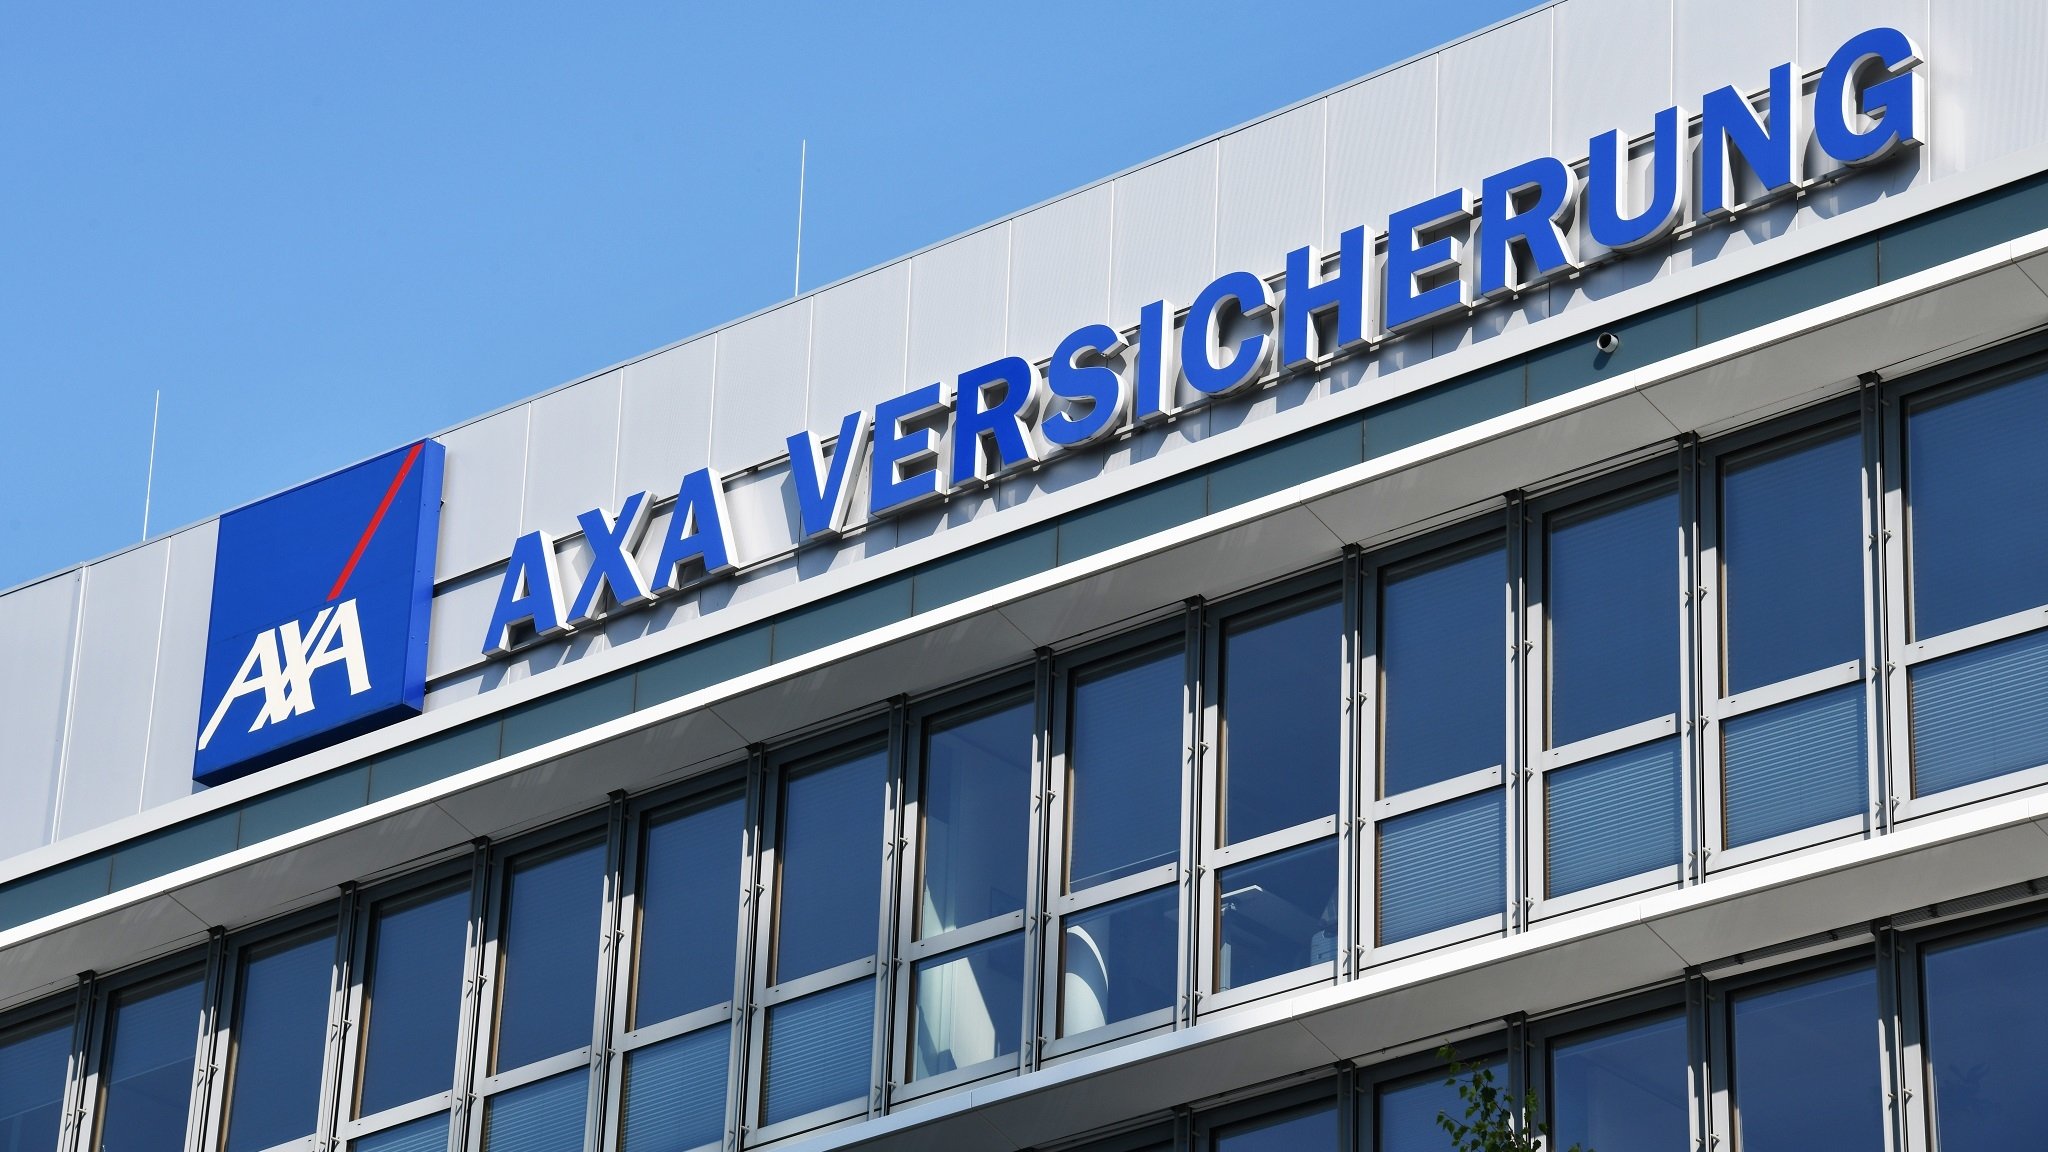 Gebäude der Axa Versicherung in Düsseldorf, Nordrhein-Westfalen